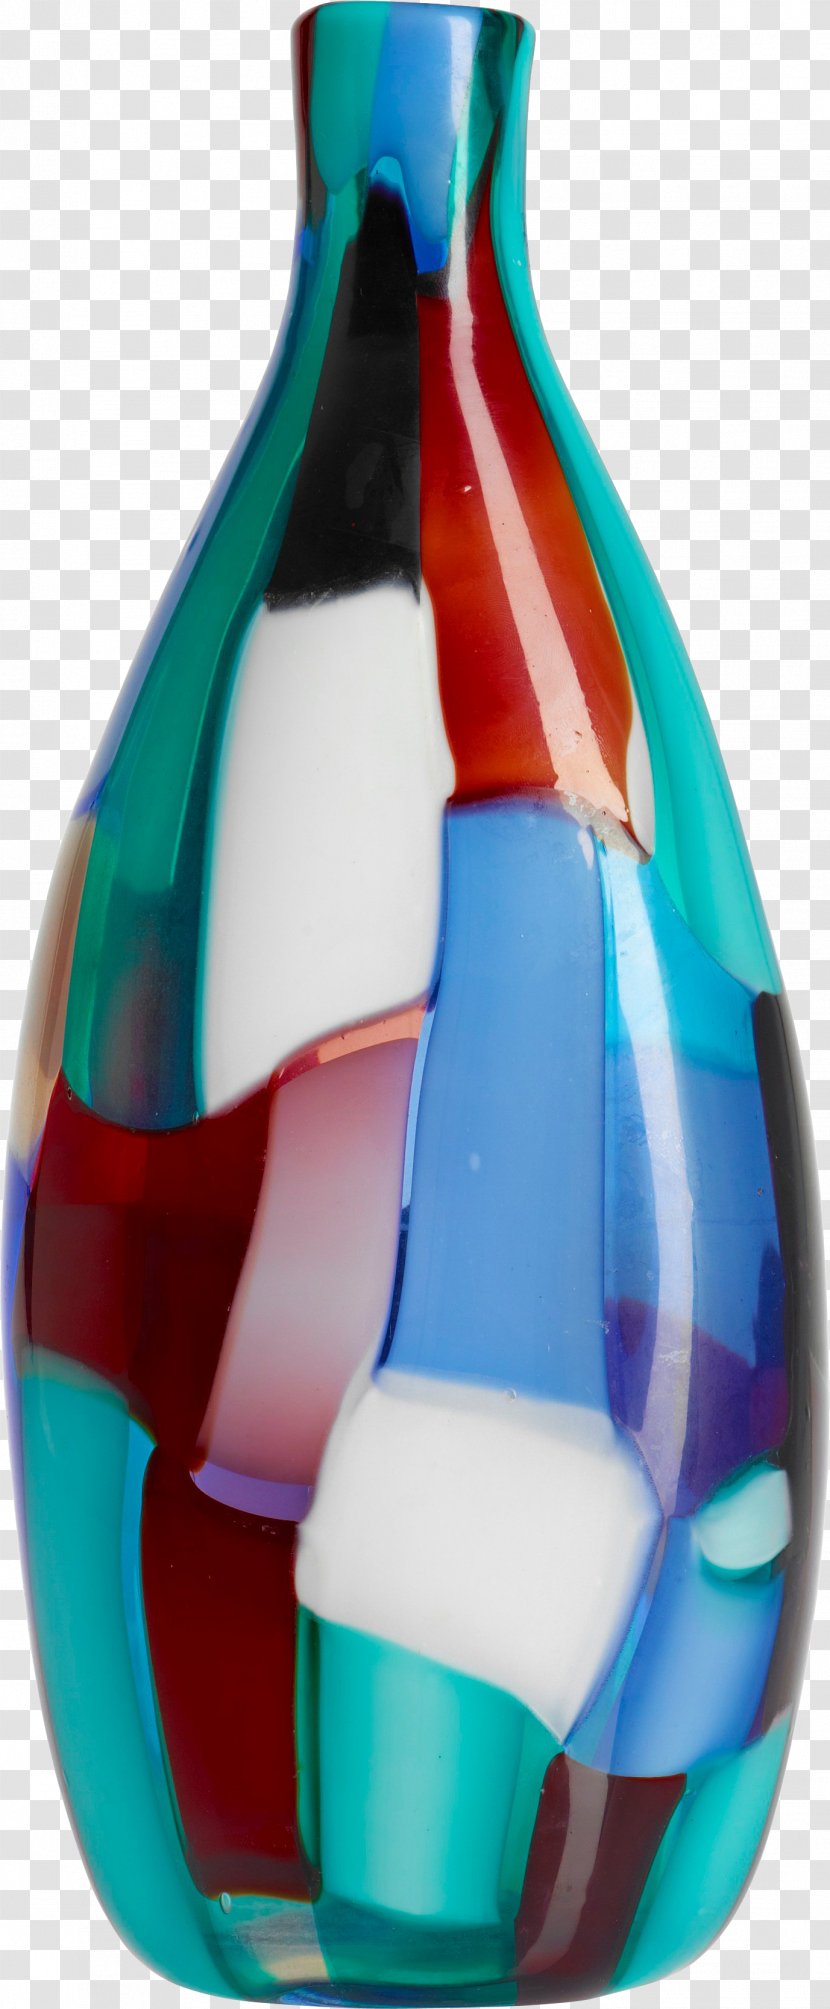 Vase Blue Bottle Glass Transparent PNG